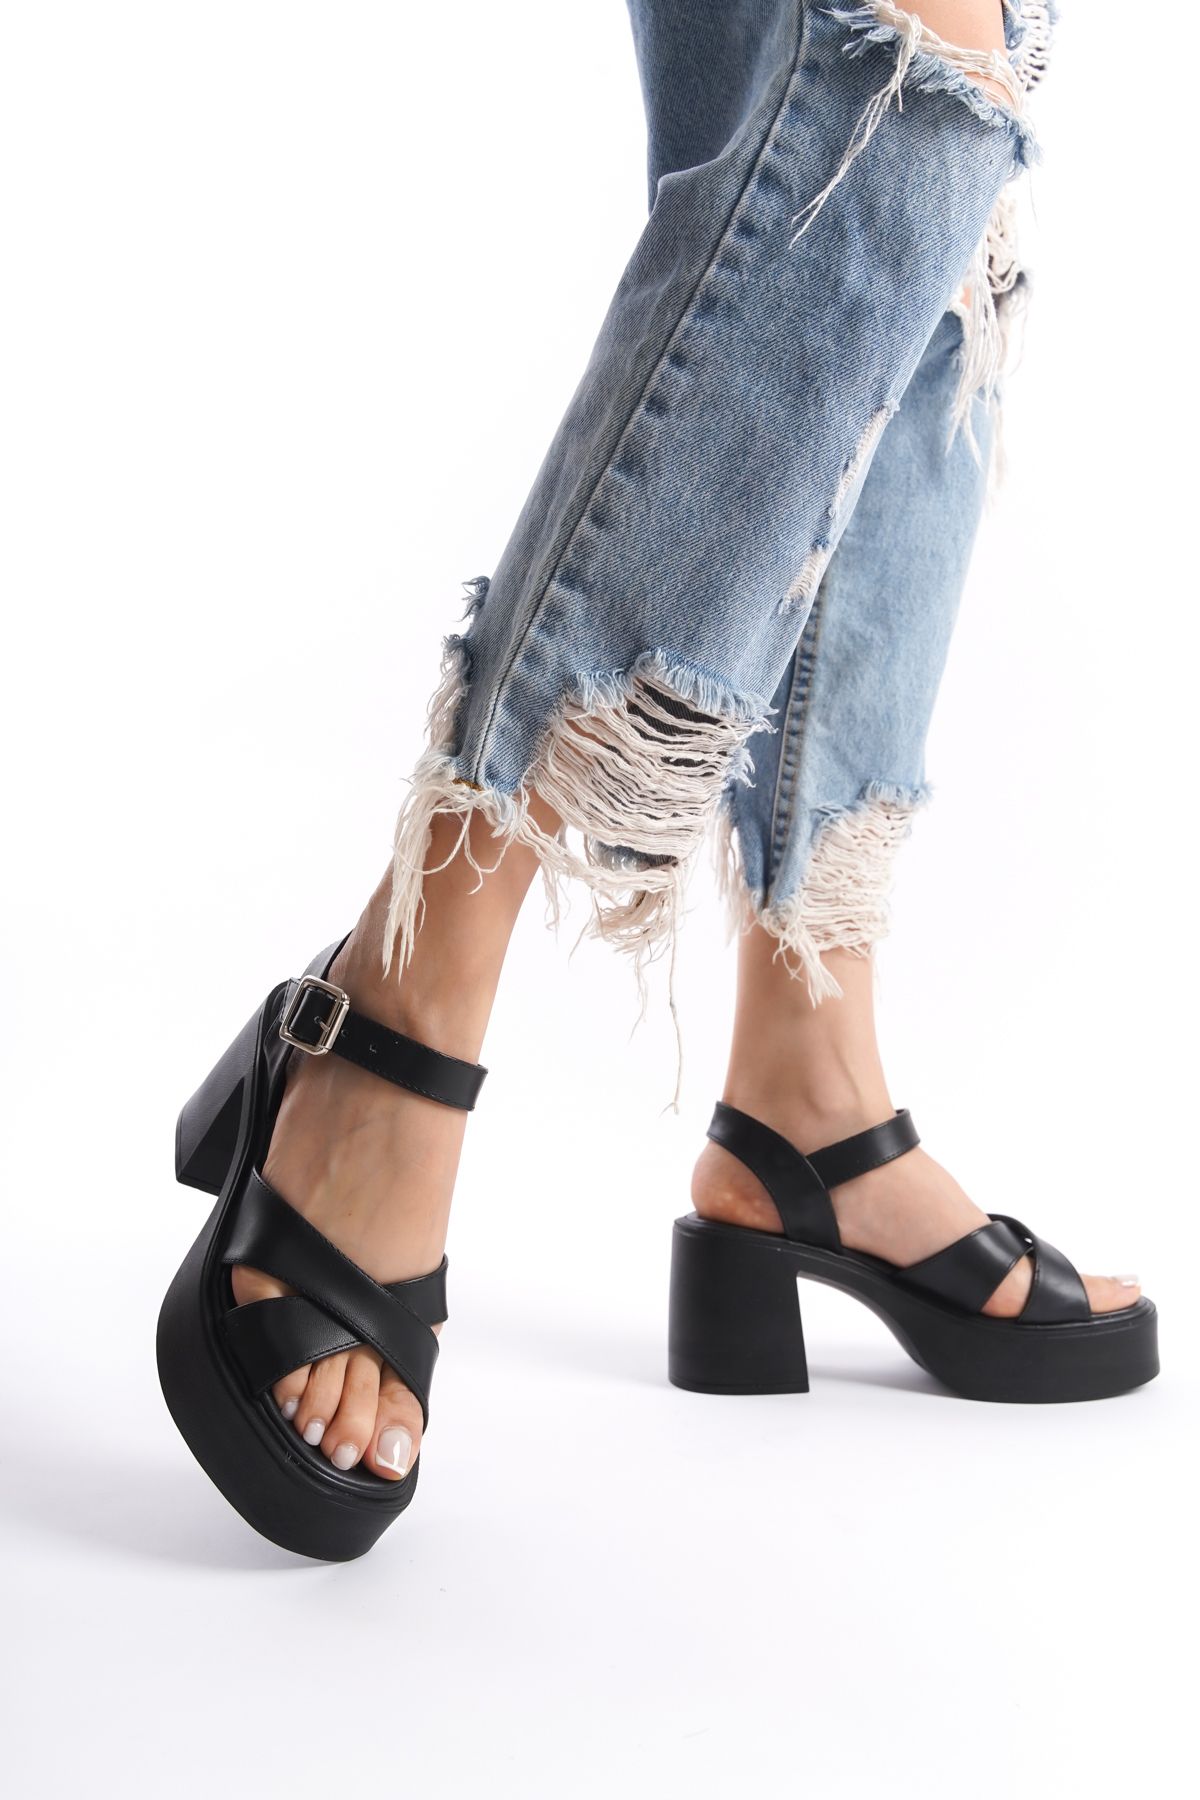 Limeo Siyah Yüksek Yandan Tokalı Çapraz Şeritli Önü Açık Cilt Yazlık Kadın Dolgu Taban Sandalet Ayakkabı